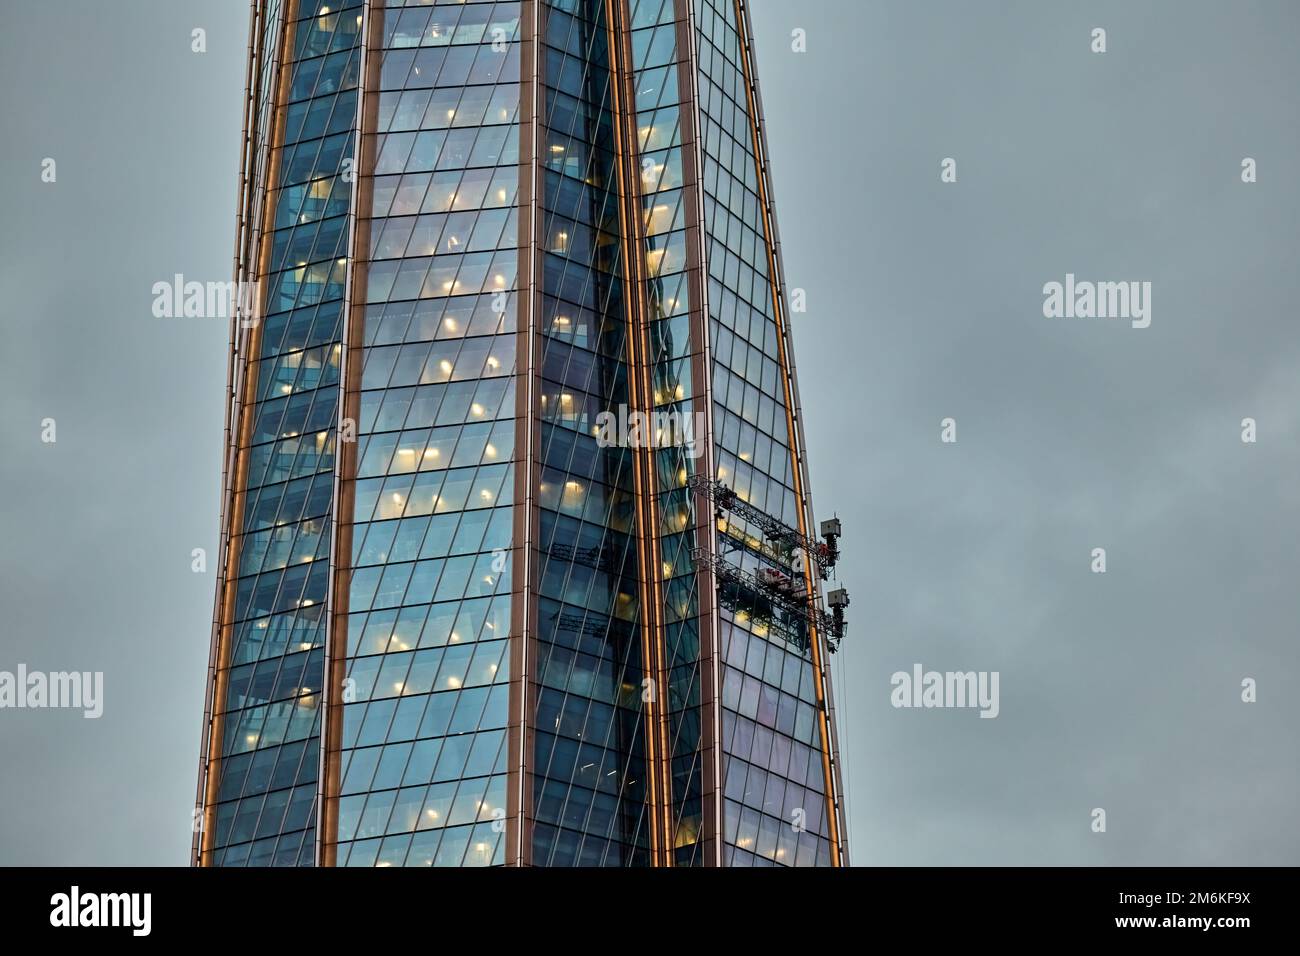 Innovatives automatisches System zum Waschen der Glasfassade eines Wolkenkratzers, des Wolkenkratzers in der Dämmerung, der Glas- und Eisenfassade Stockfoto